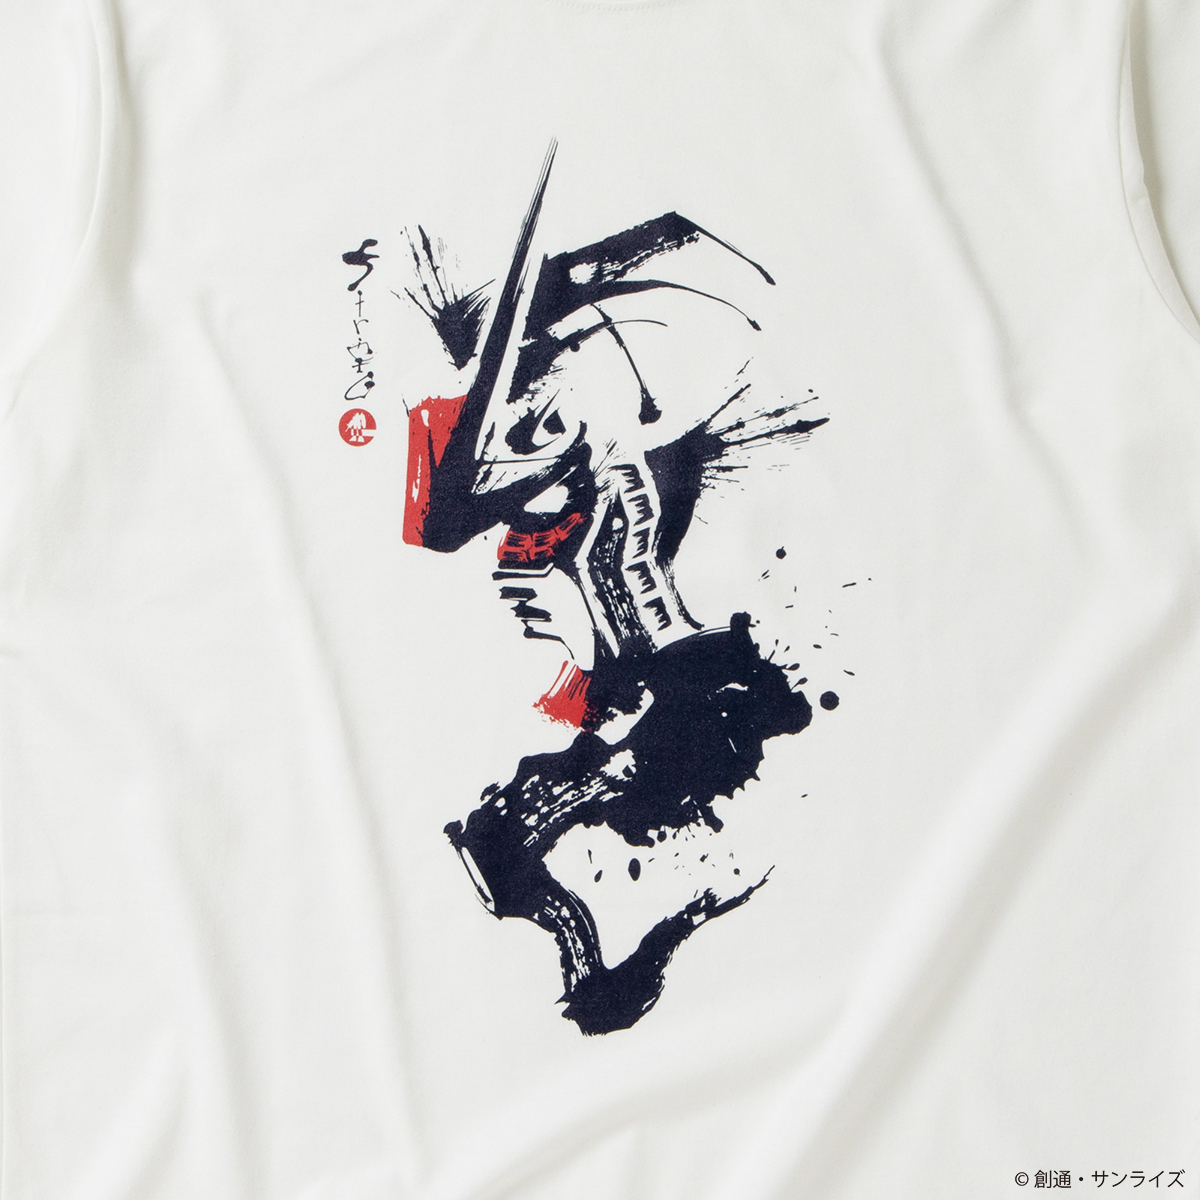 『機動戦士ガンダム』歴戦のモビルスーツを筆絵風の和柄デザインに STRICT-G JAPAN筆絵タッチの和柄長袖Tシャツが登場！